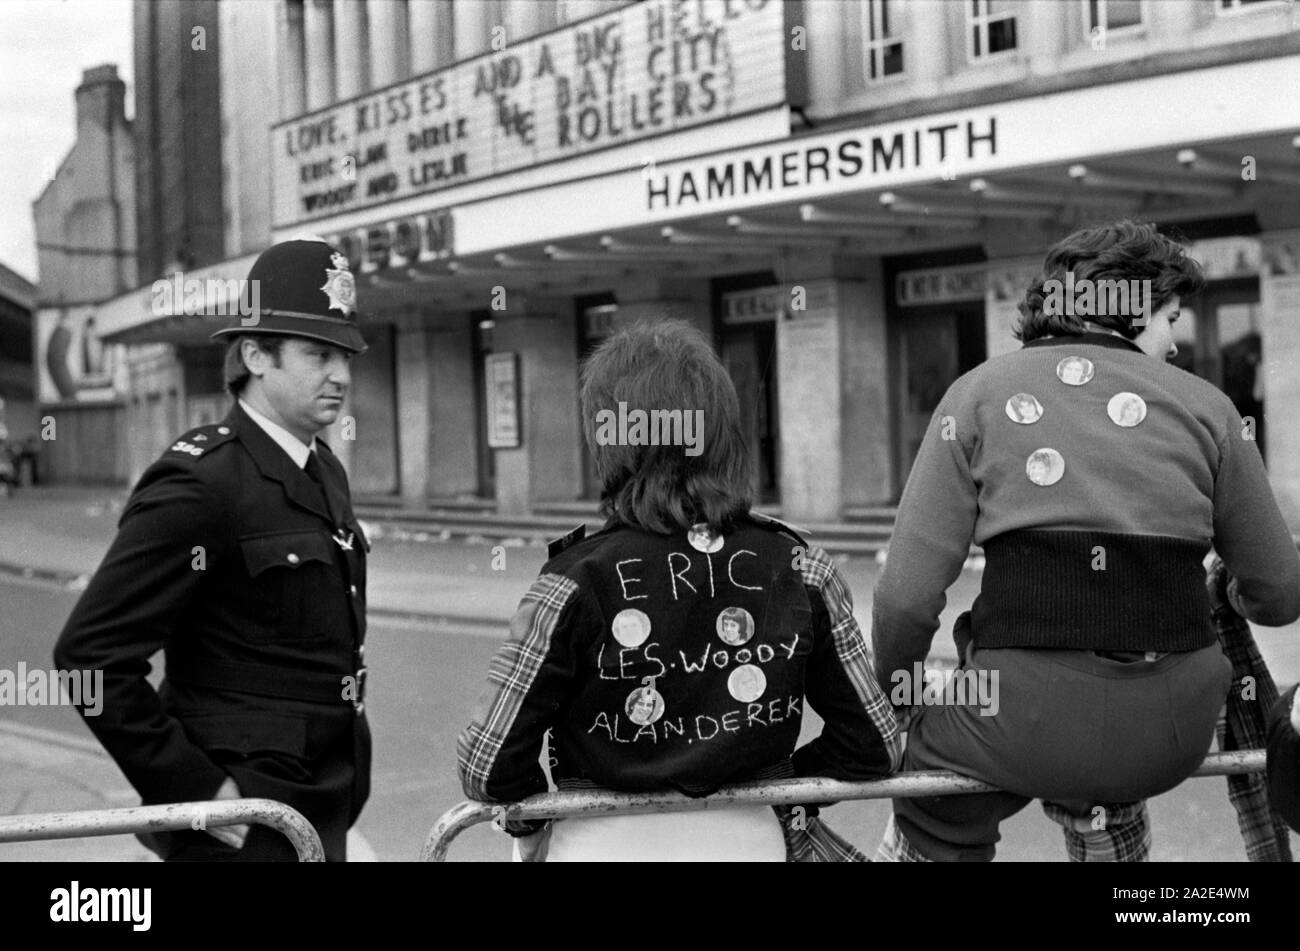 Bay City Roller Fans groupe pop concert pop congé au Hammersmith Odeon, ouest de Londres 1975. Ils portent les Bay City Roller mode tartan 1970 policier en service à discuter avec les adolescents. 70 Angleterre HOMER SYKES Banque D'Images